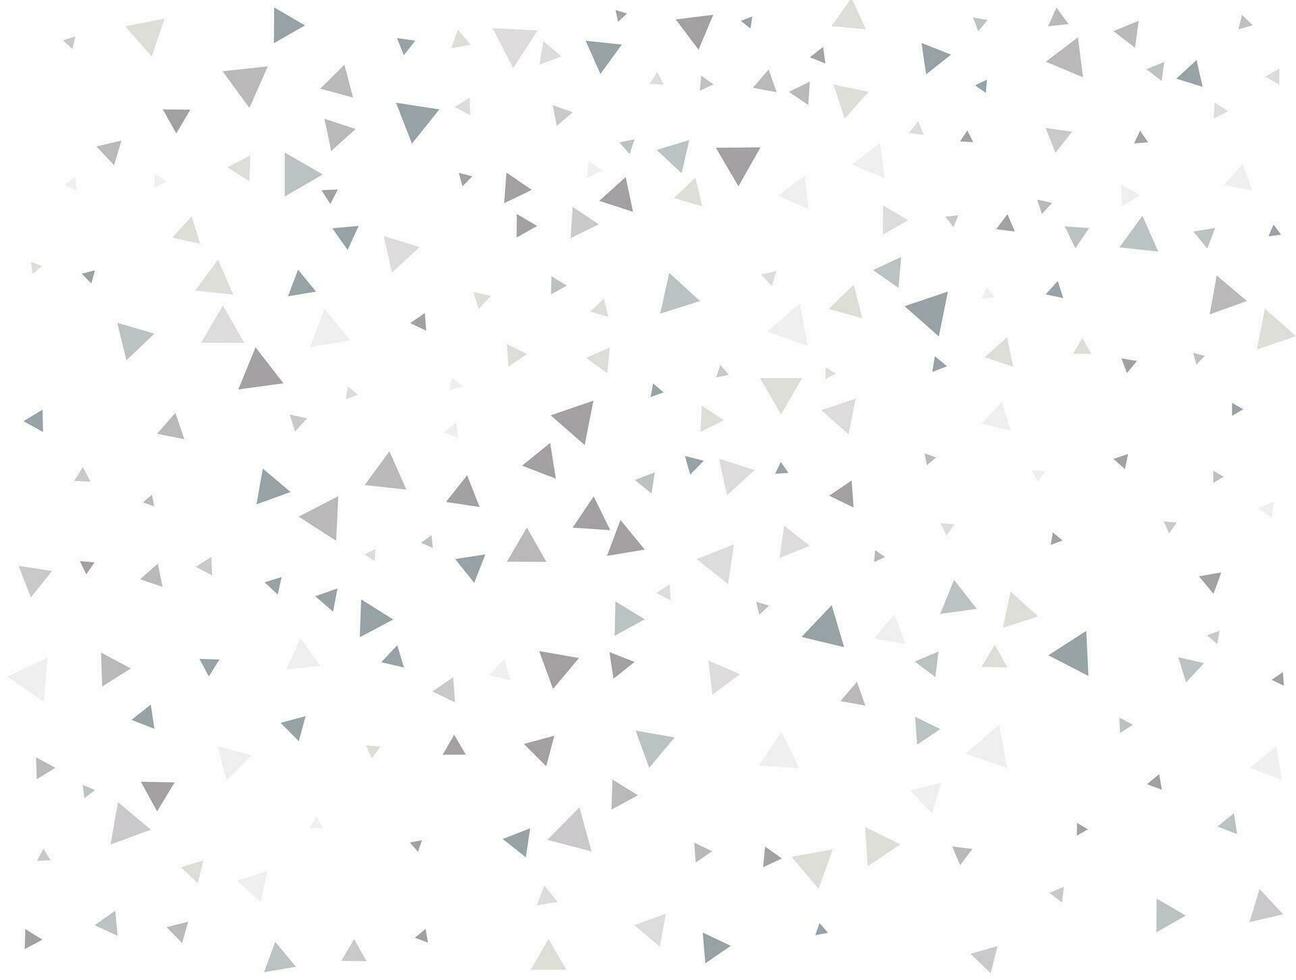 matrixzilver driehoekig confetti. confetti viering, vallend zilver abstract decoratie voor partij, verjaardag vieren, verjaardag of evenement, feestelijk. festival decor. vector illustratie.